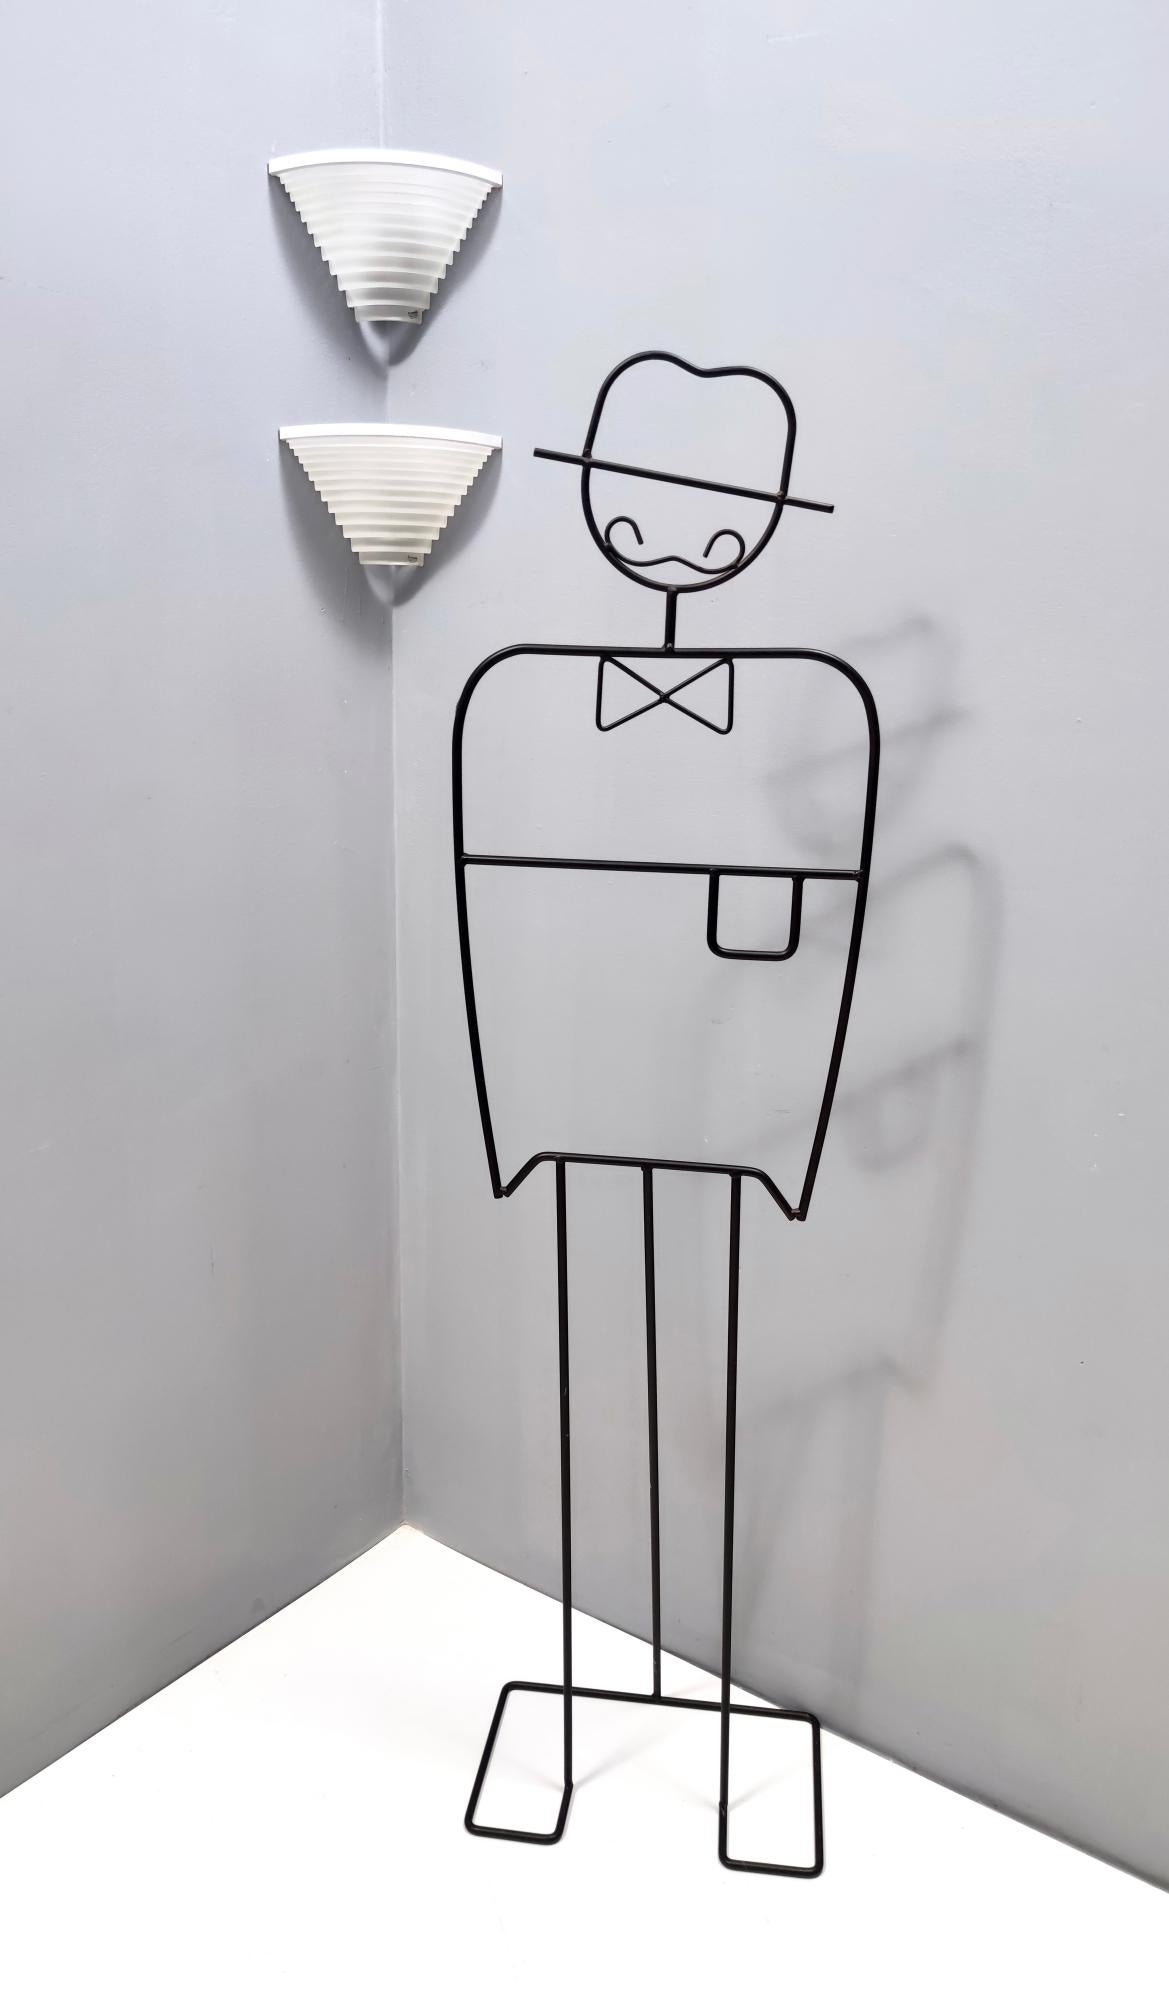 Hergestellt in Italien, 1980er Jahre.
Dies ist ein Paar italienische Vintage-Wandleuchten mit weiß geschliffenem Glaslampenschirm auf einem lackierten Metallrahmen.
Da sie Vintage sind, können sie leichte Gebrauchsspuren aufweisen, wie z. B. einen